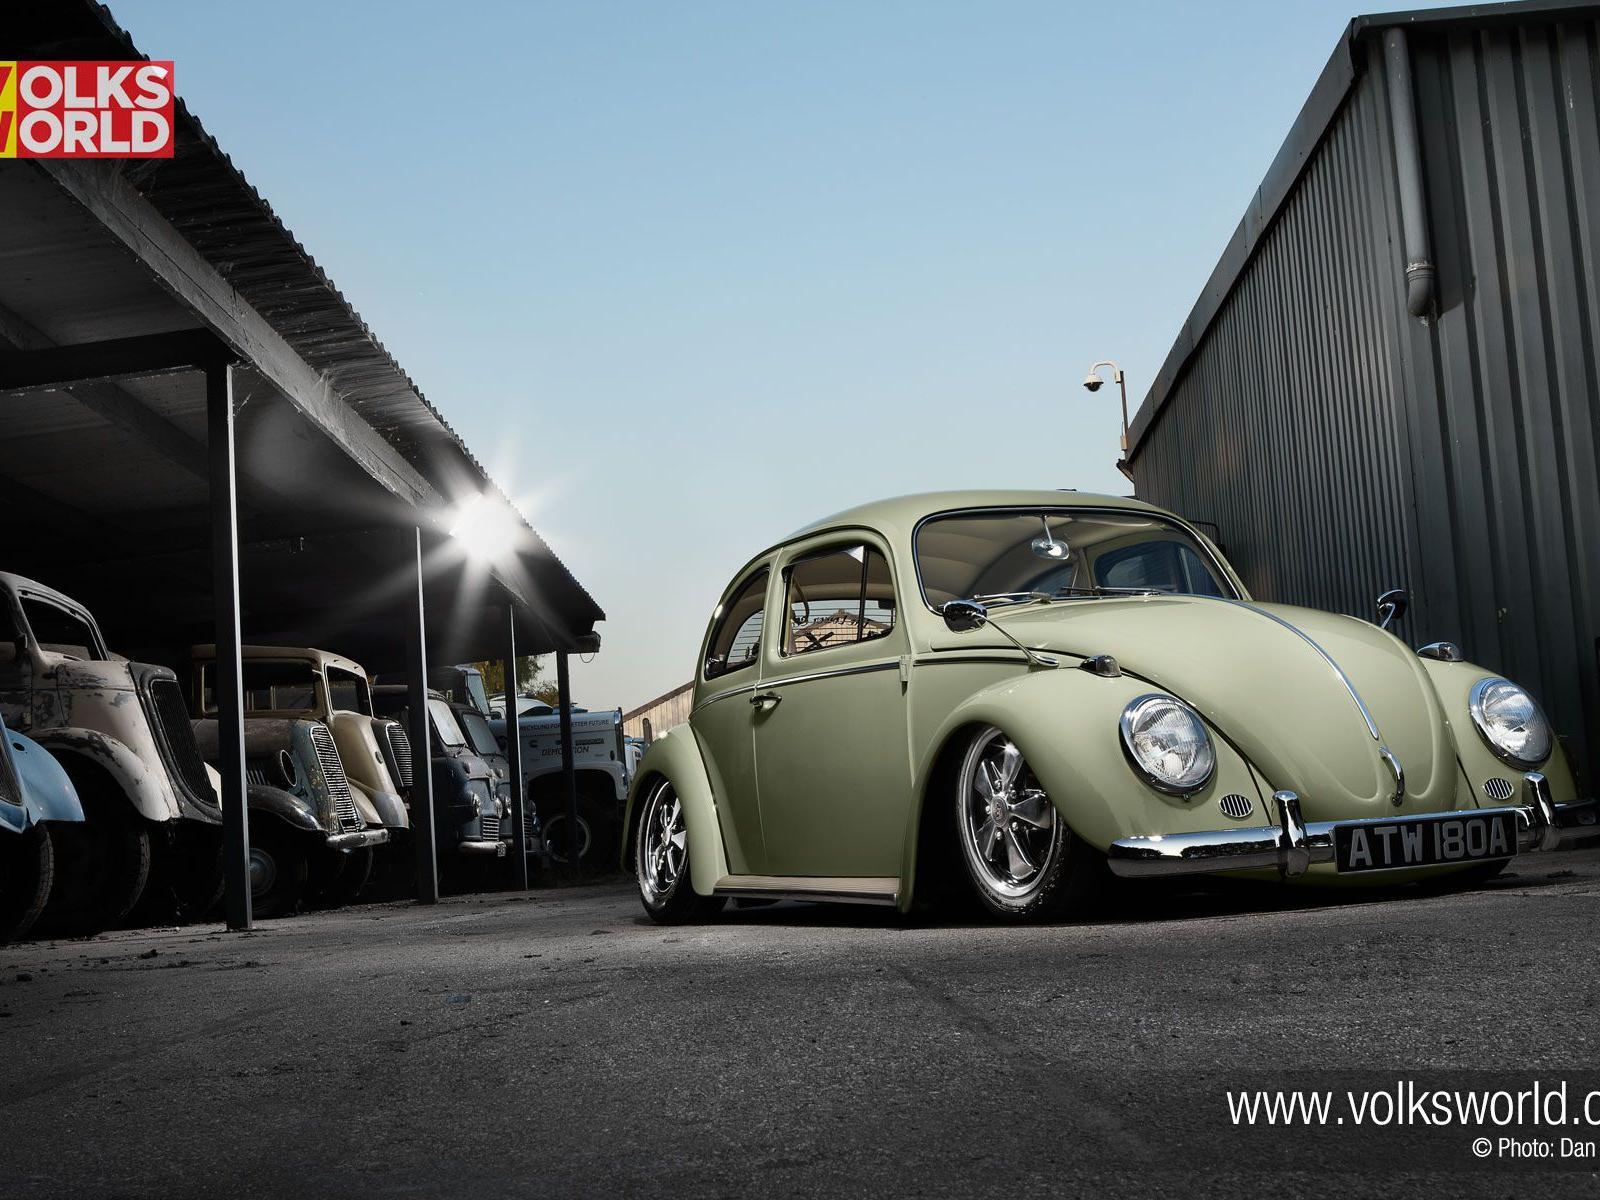 Volkswagen Beetle Wallpaper 9 X 1200